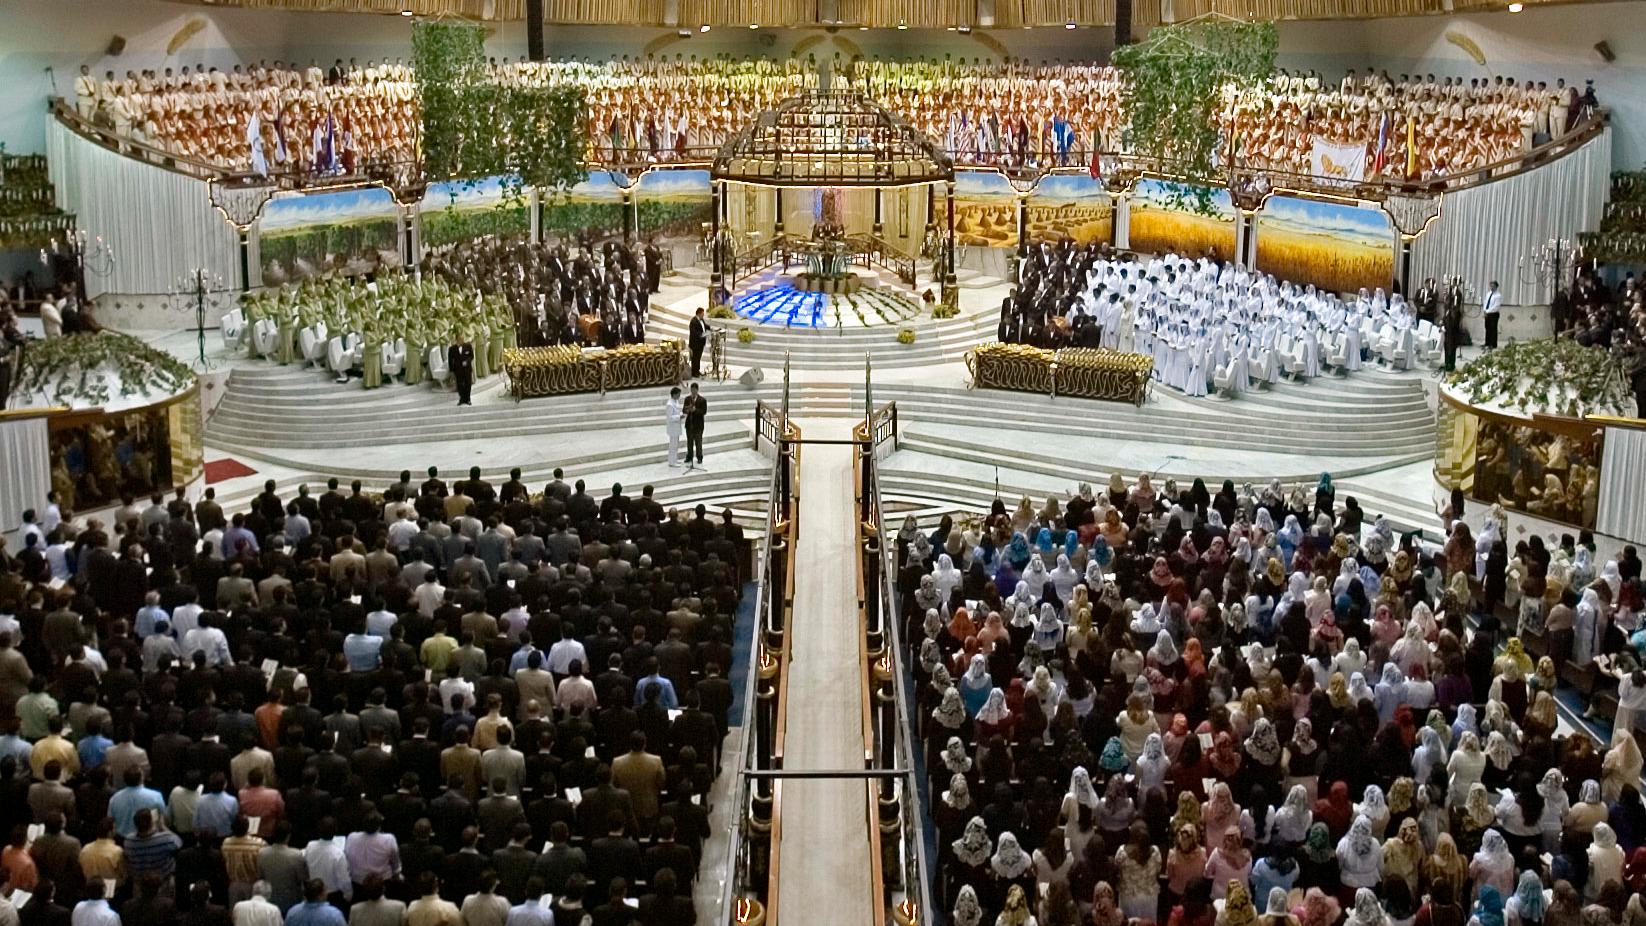 Hundratals av La luz del mundos medlemmar deltar i en gudstjänst i Guadalajara, Mexiko. Arkivbild.